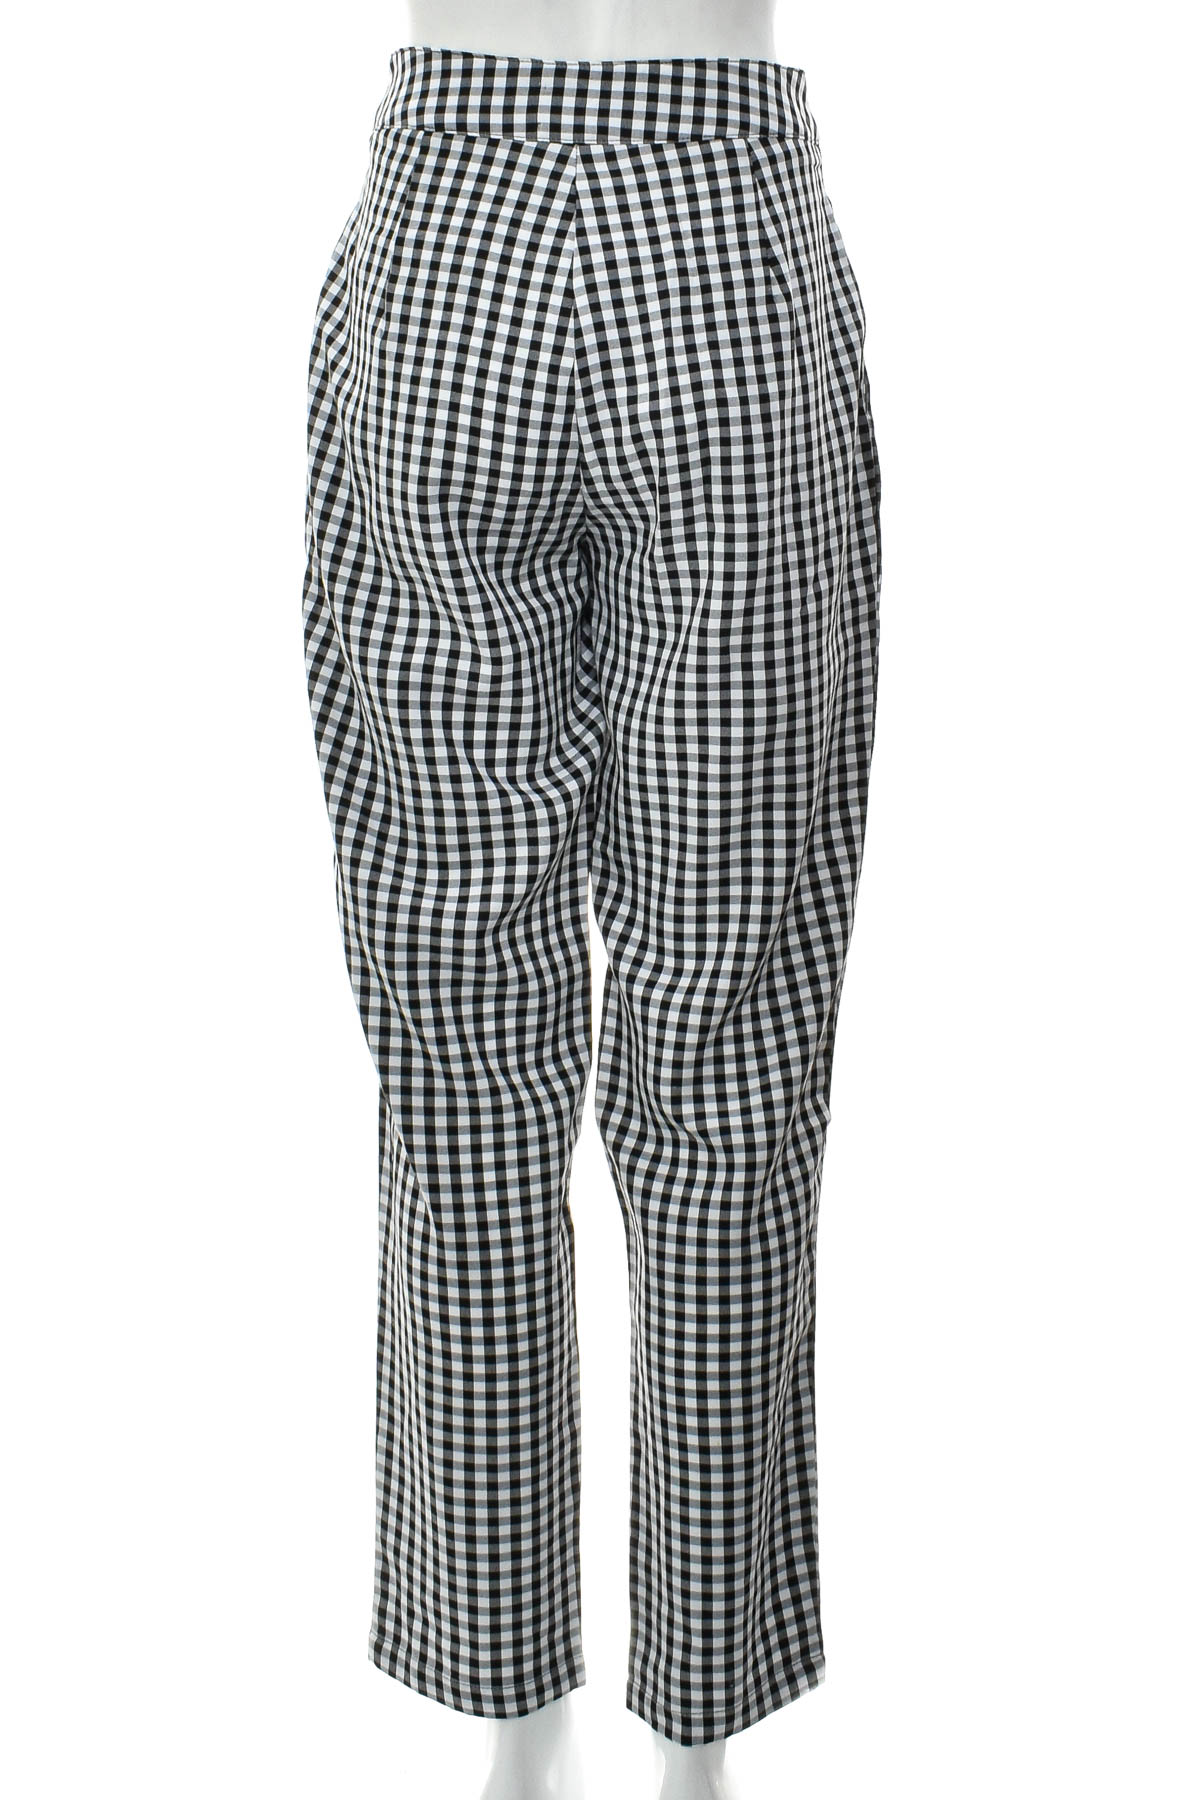 Women's trousers - SHEIN - 1